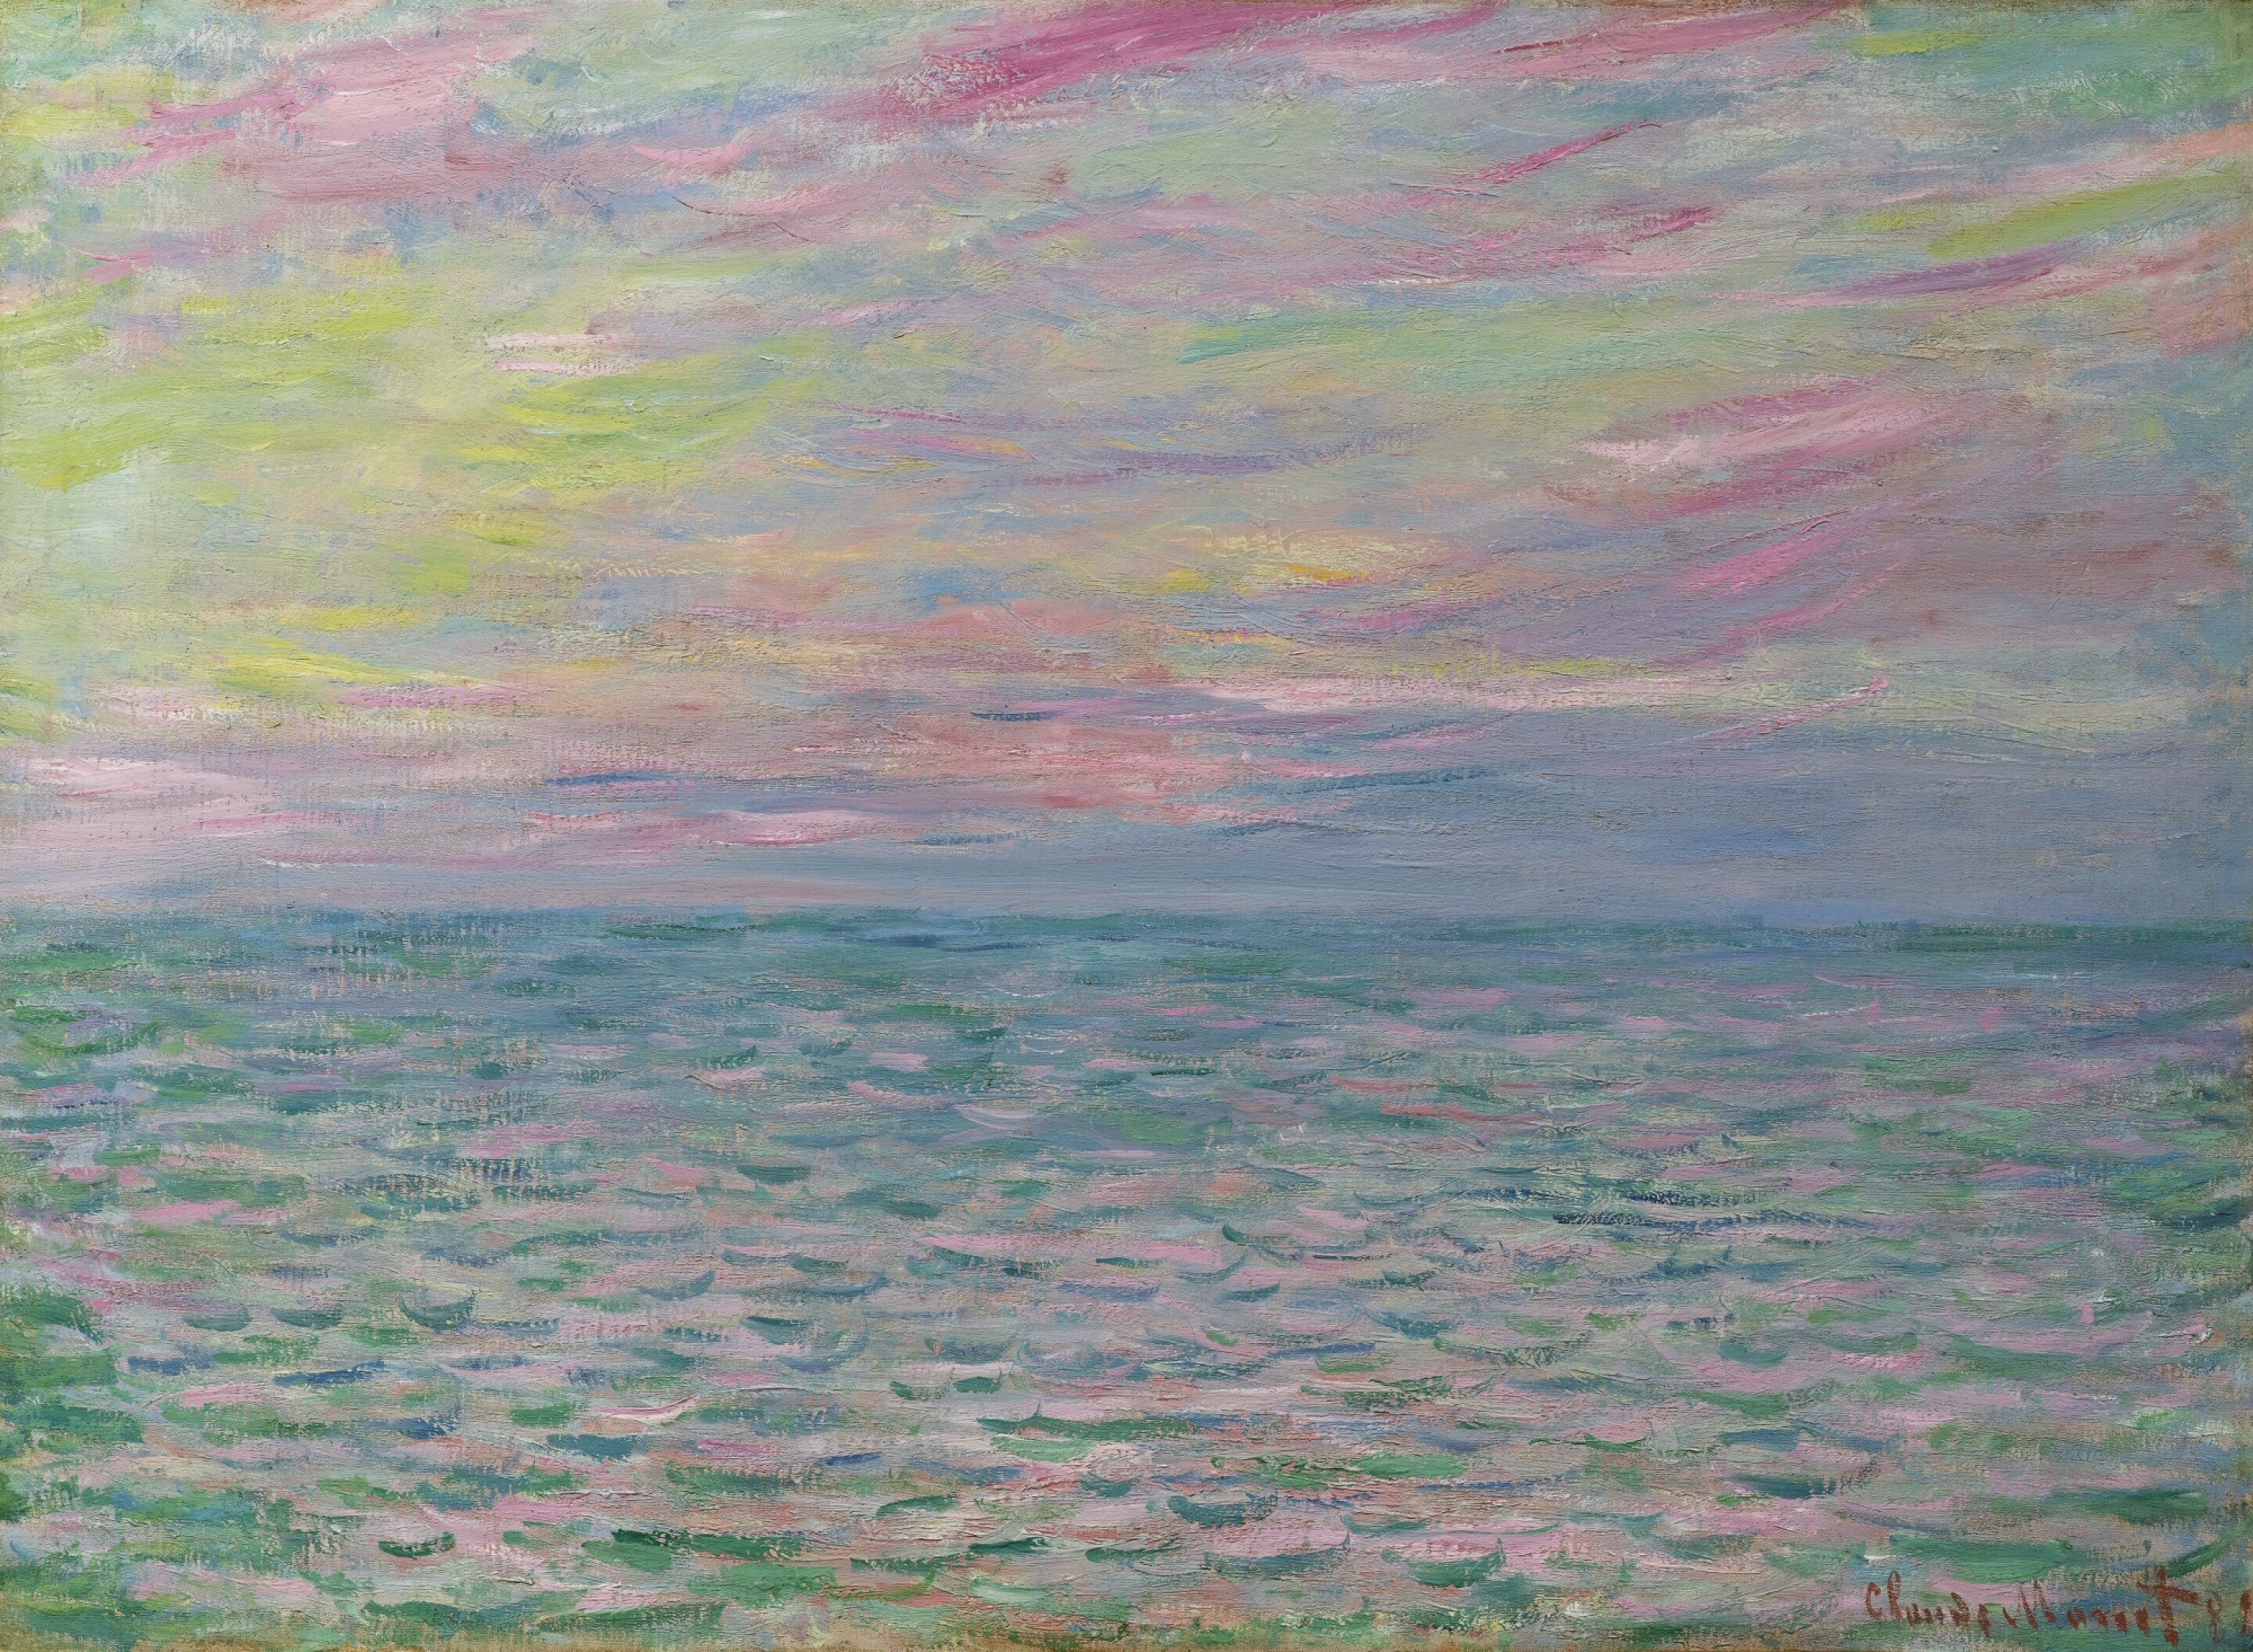 Coucher de soleil à Pourville, pleine mer by Claude Monet - 1882 - 54 x 73,5 cm collection privée